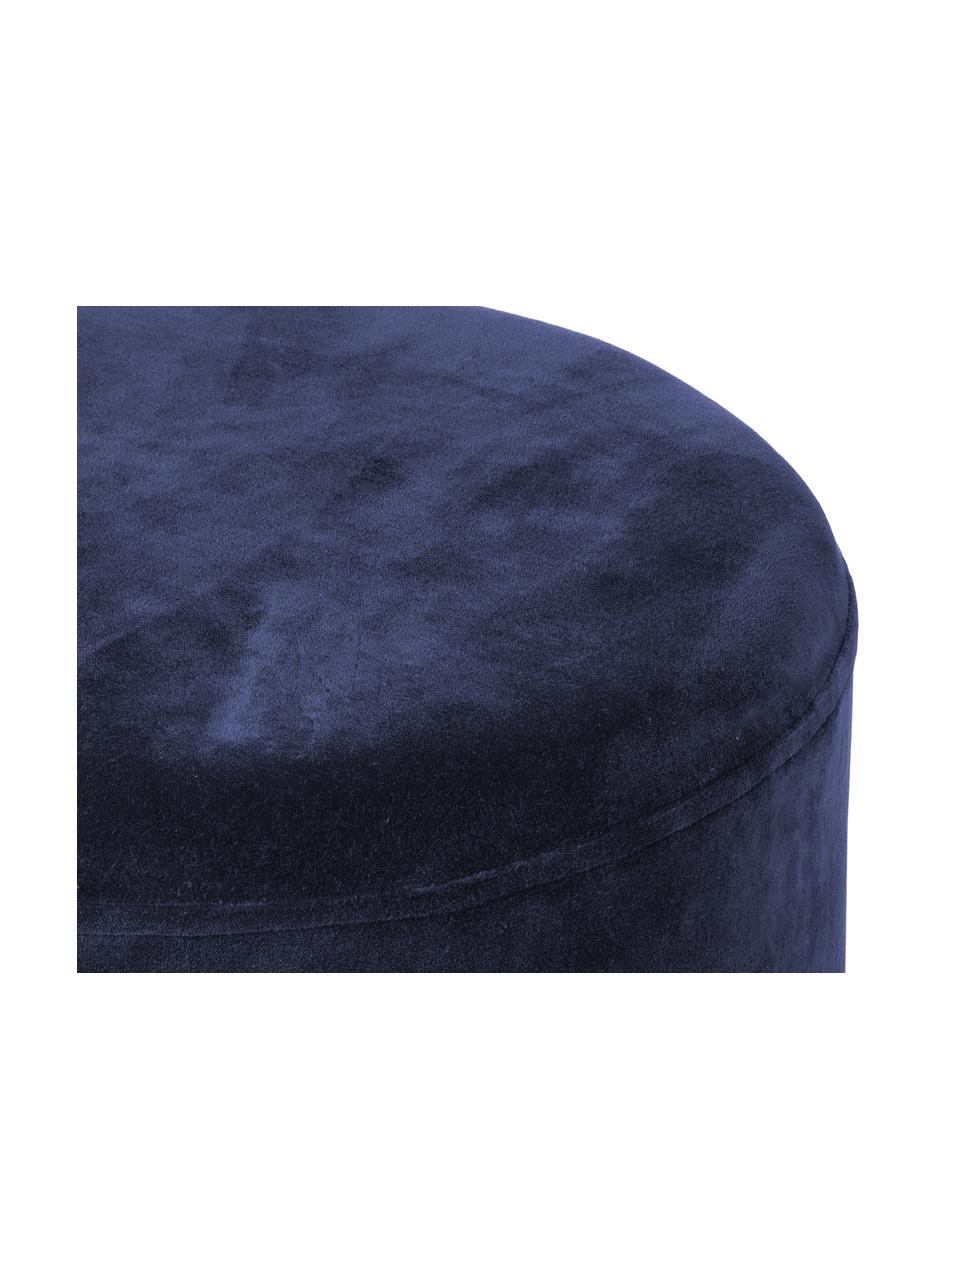 Pouf in velluto Harlow, Rivestimento: velluto di cotone, Blu navy, dorato, Ø 38 x Alt. 42 cm